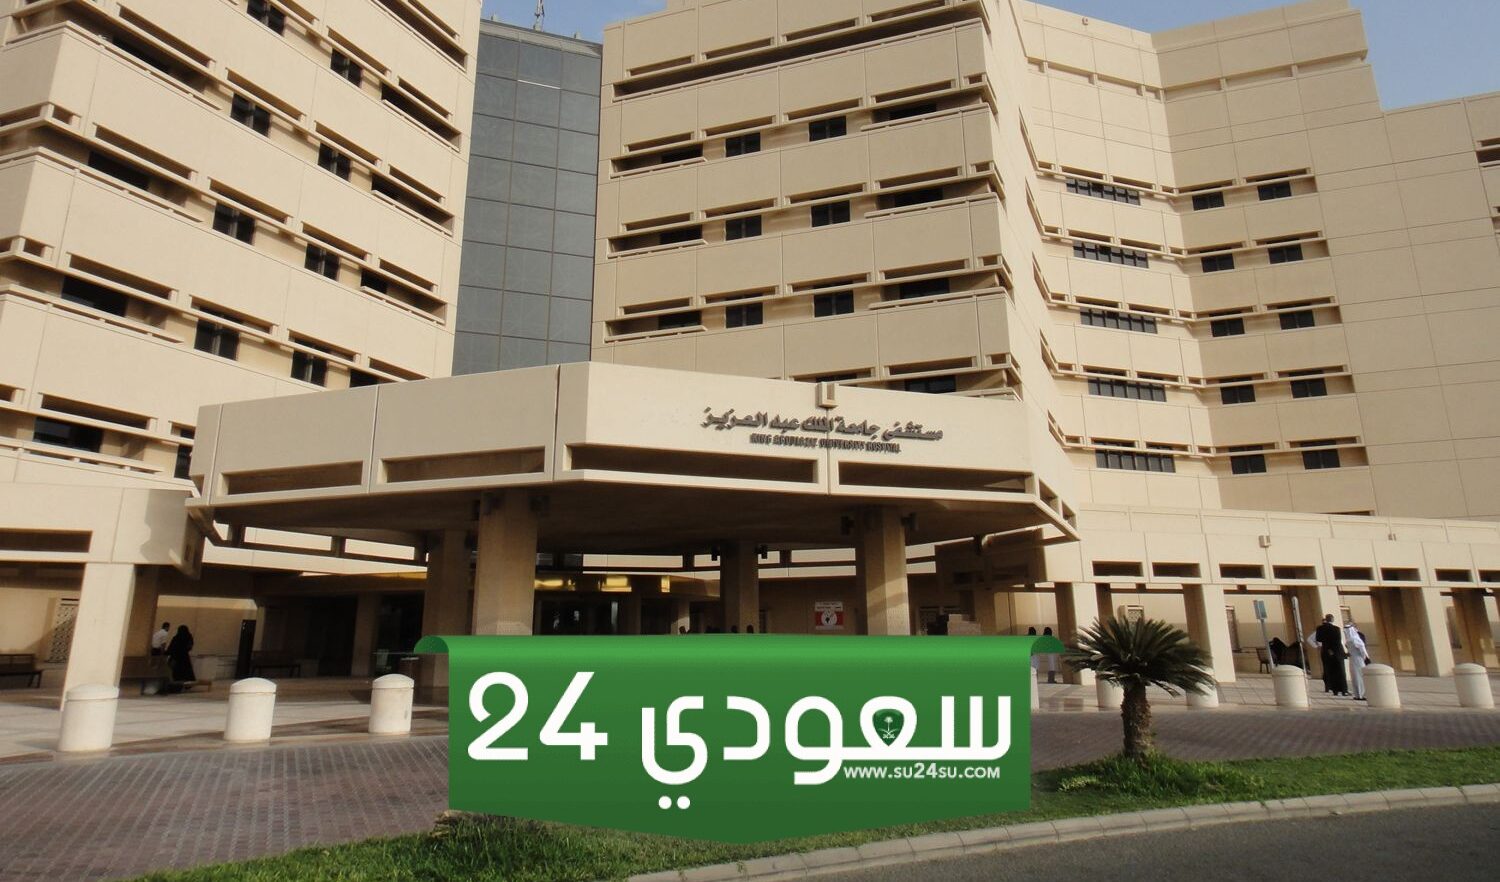 تخصصات الدبلوم في جامعة الملك عبدالعزيز 1446